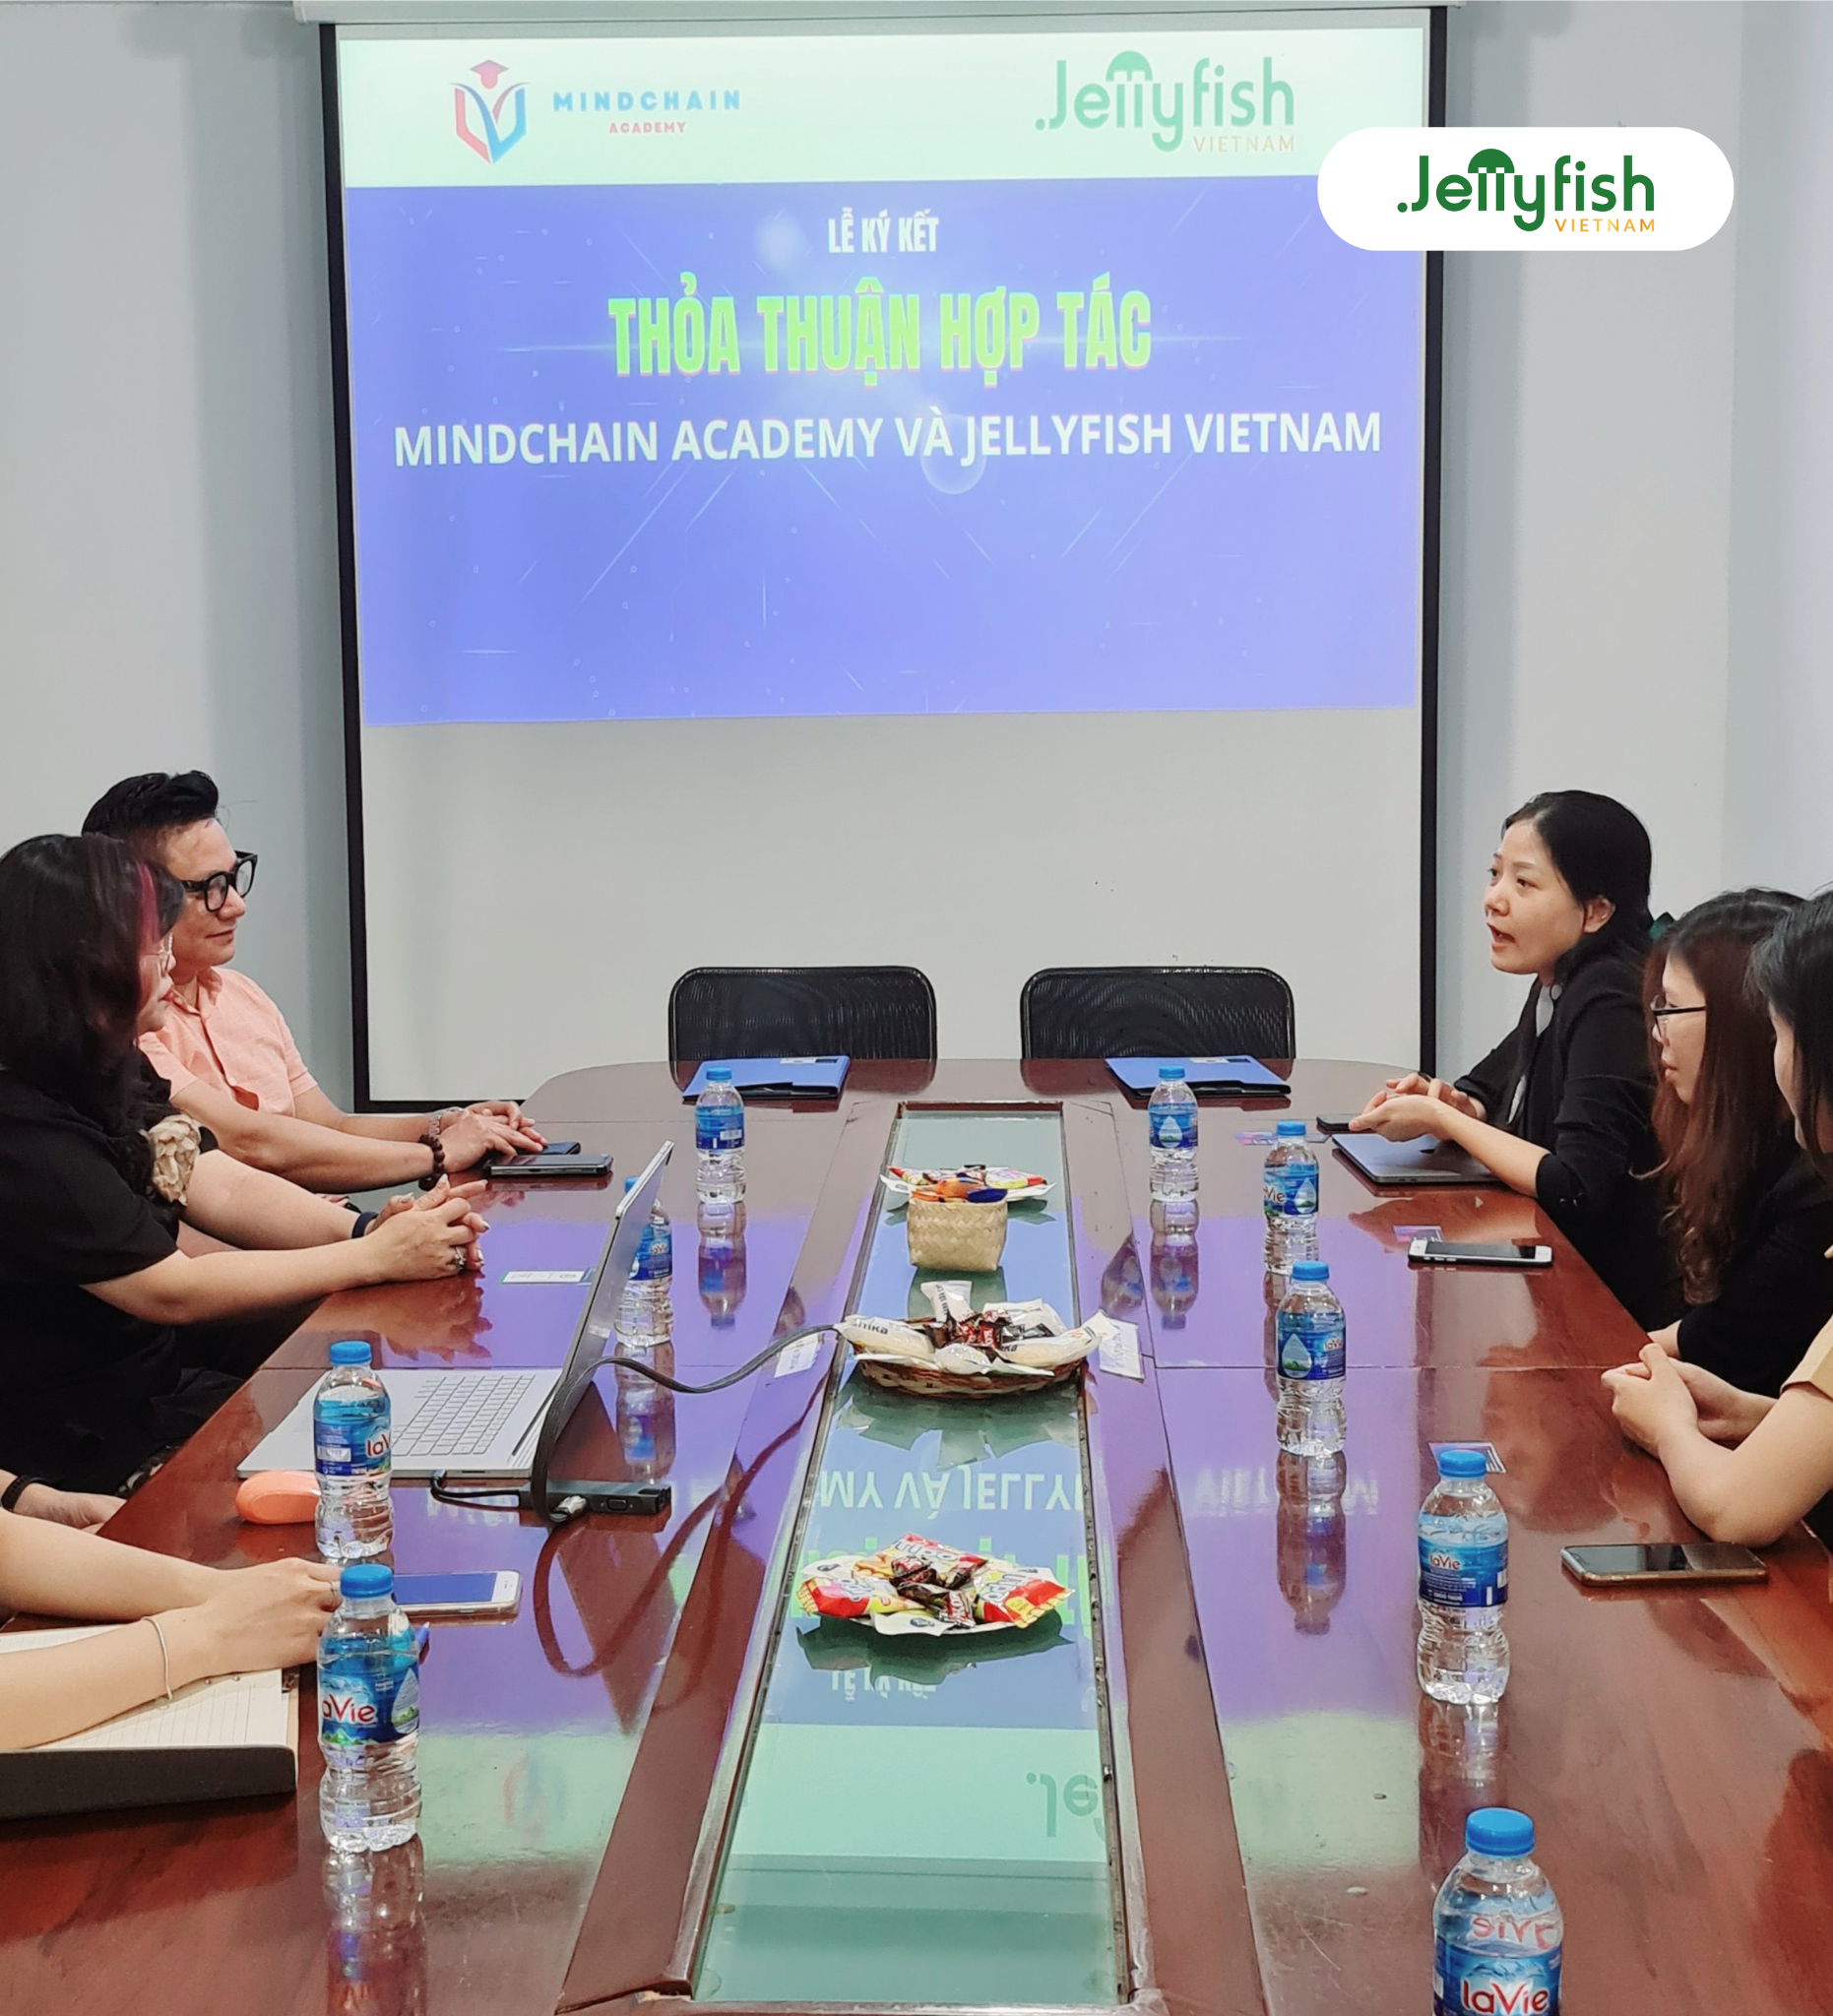 Jellyfish Việt Nam và MindChain Academy ký kết hợp tác